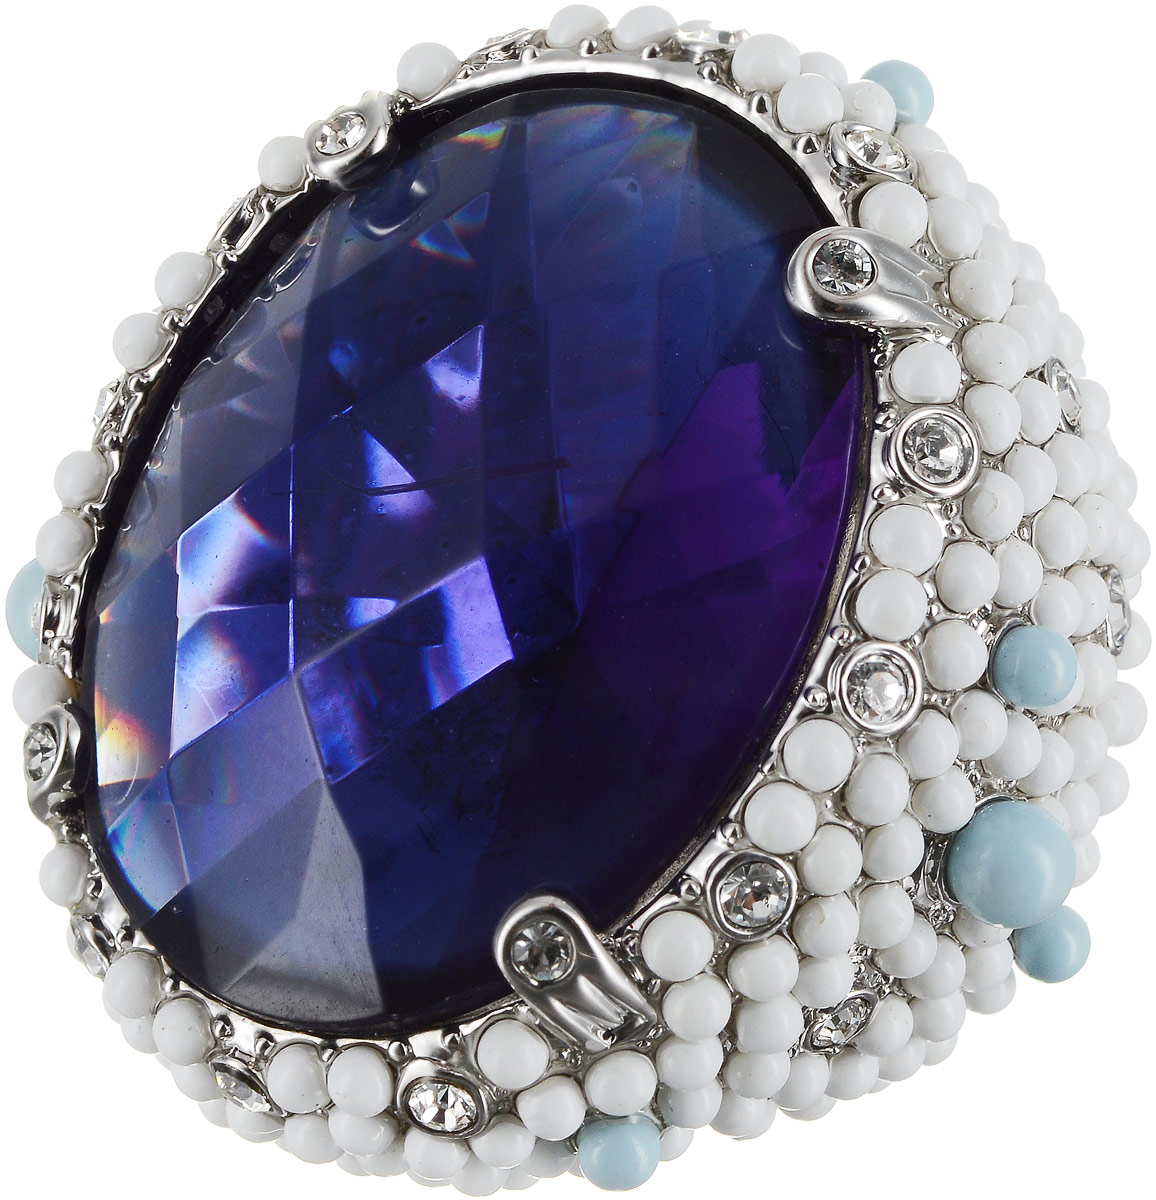 Кольцо Art-Silver, цвет: серебряный, синий, белый. 428-2106. Размер 18